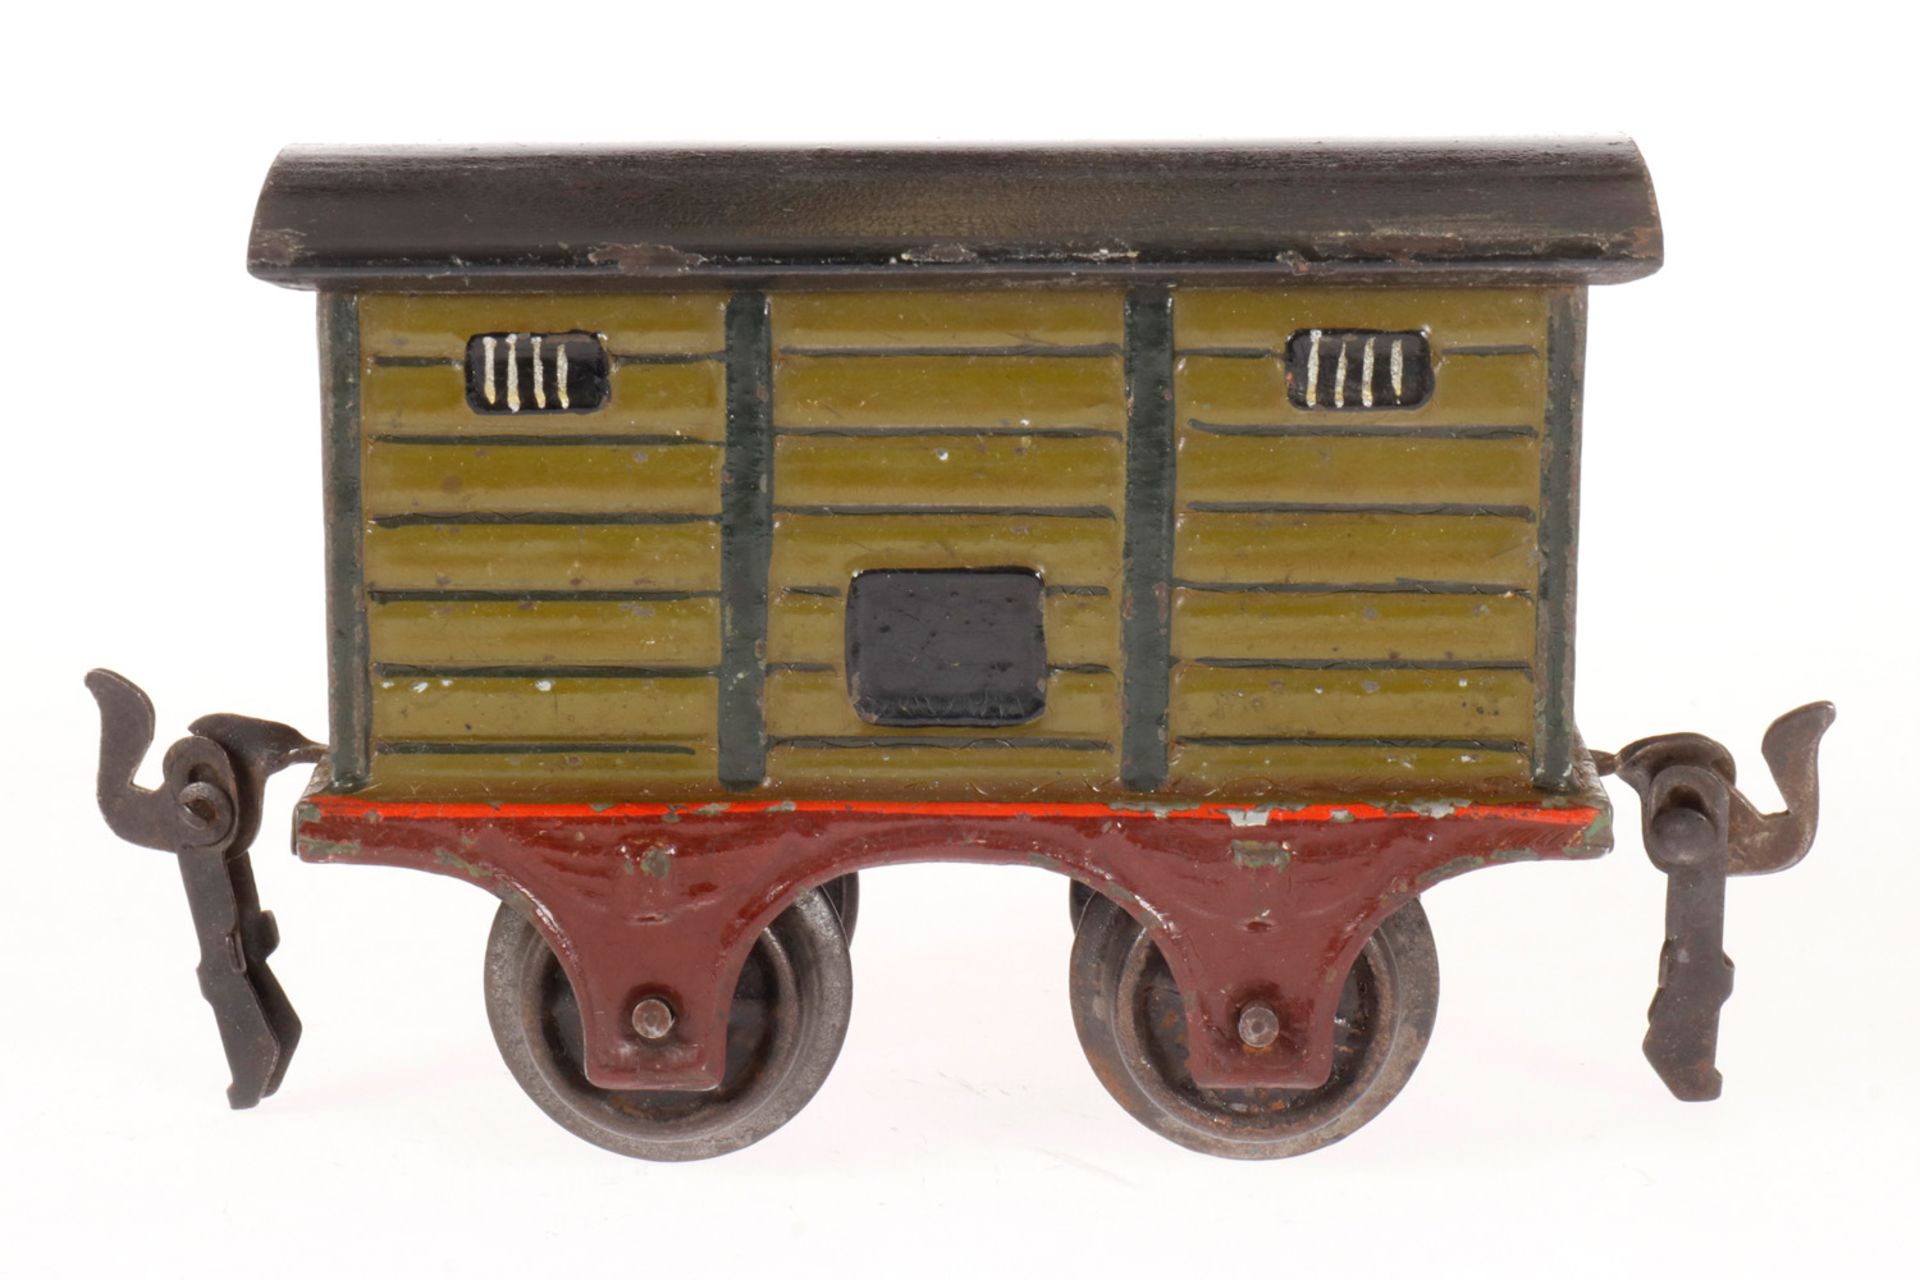 Märklin gedeckter Güterwagen 1857, S 0, uralt, HL, mit 1 ST, Dach rest., LS, L 9,5, Z 3